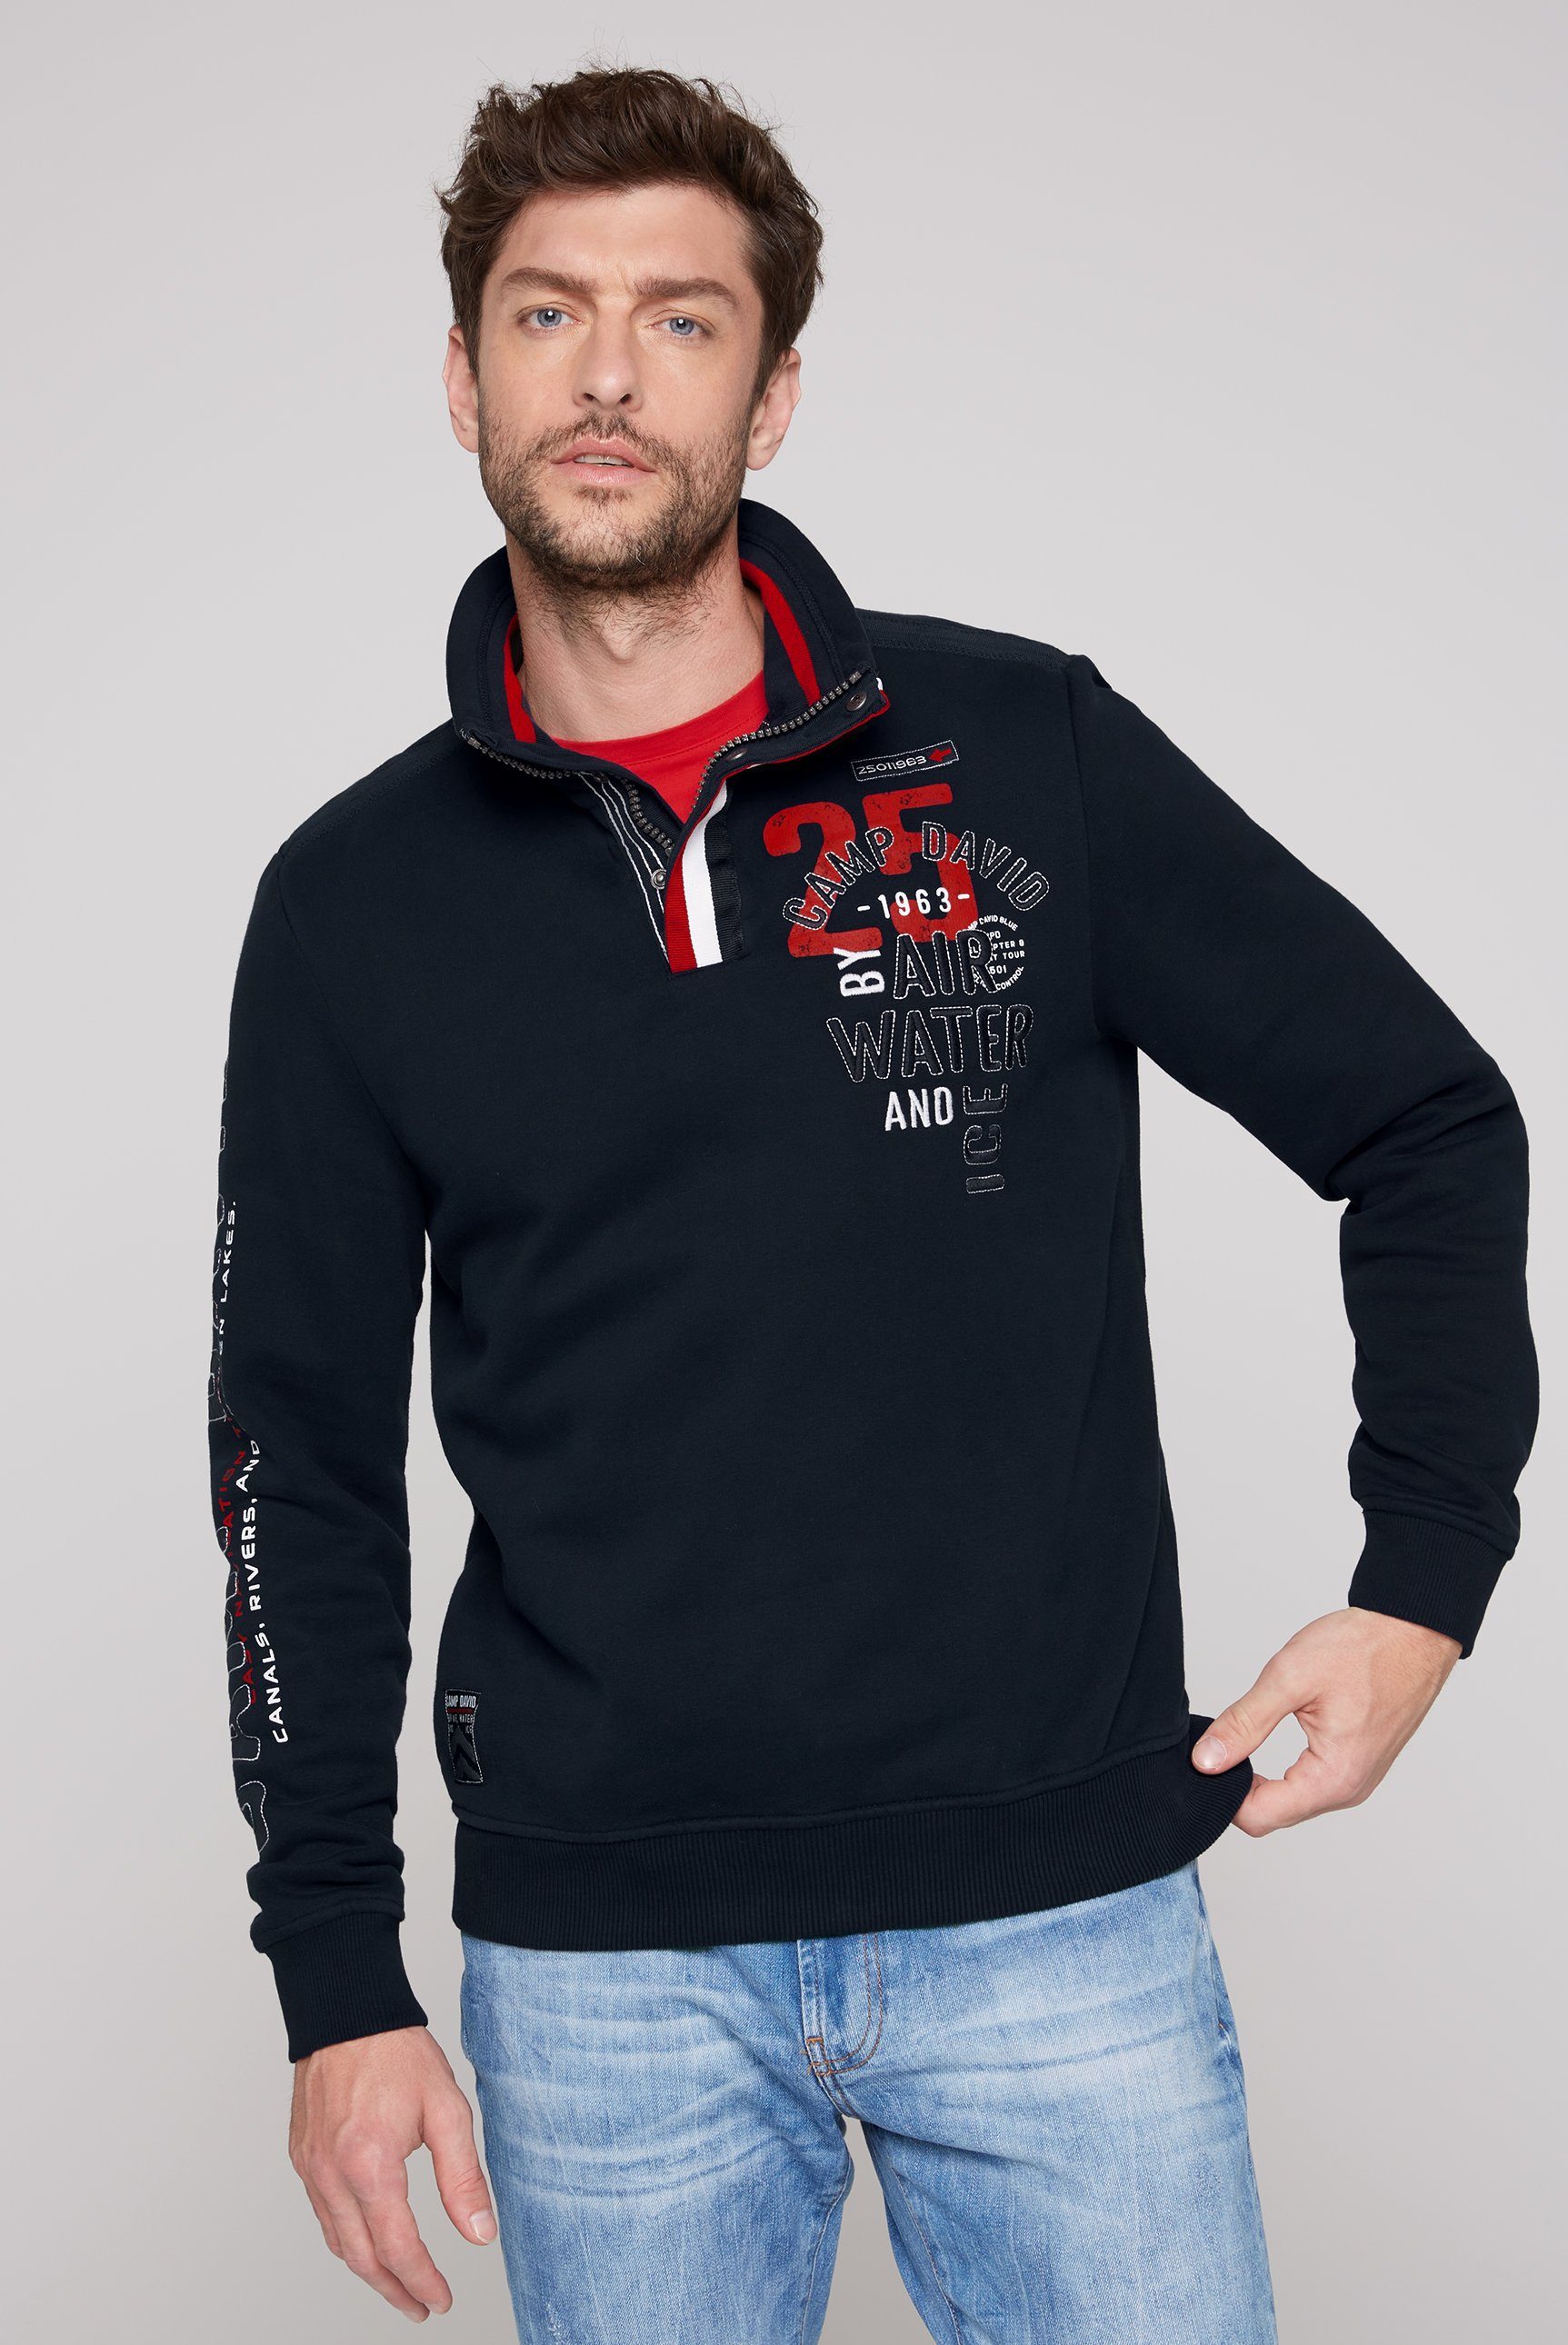 Verkauf und Kauf von CAMP DAVID frozen Logo-Artworks Sweatshirt mit navy